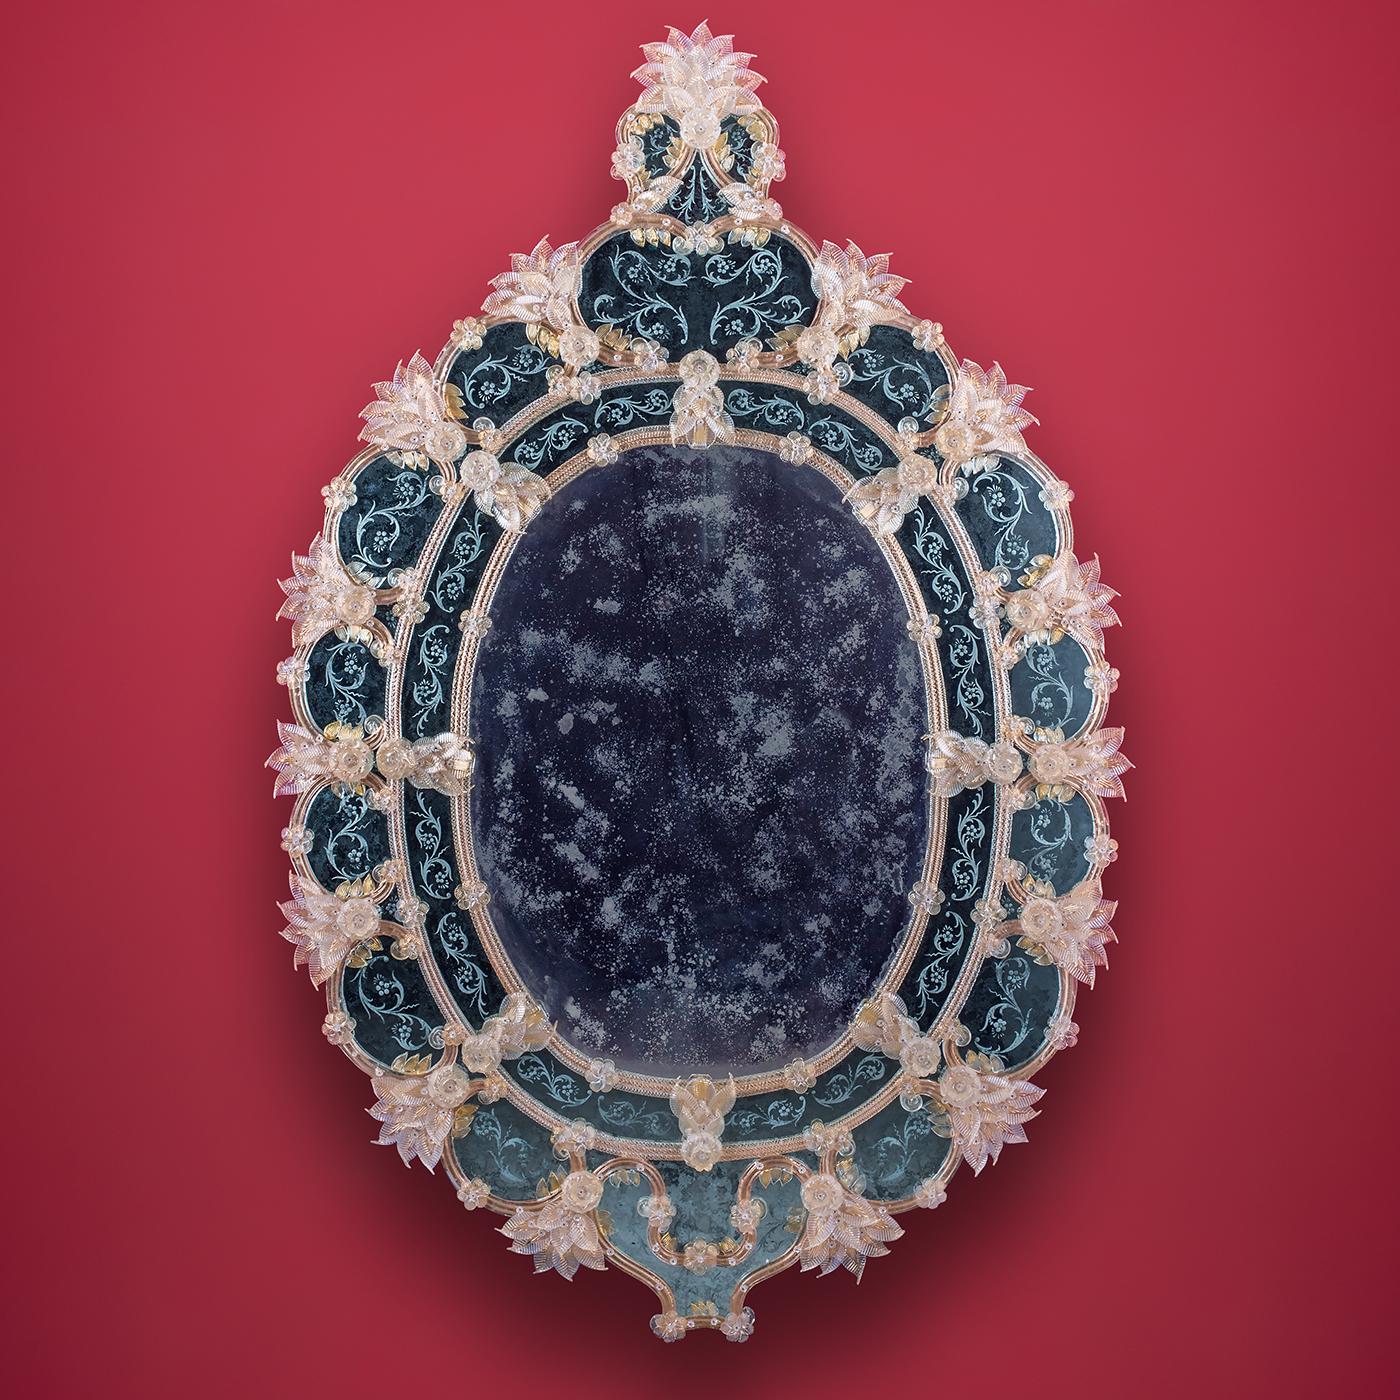 Ce meuble est une reproduction du typique miroir vénitien ancien en verre de Murano, argenté à l'ancienne entièrement produit au mercure. Cette technique est typique de la région vénitienne du XVIIIe siècle. Les gravures, entièrement réalisées à la